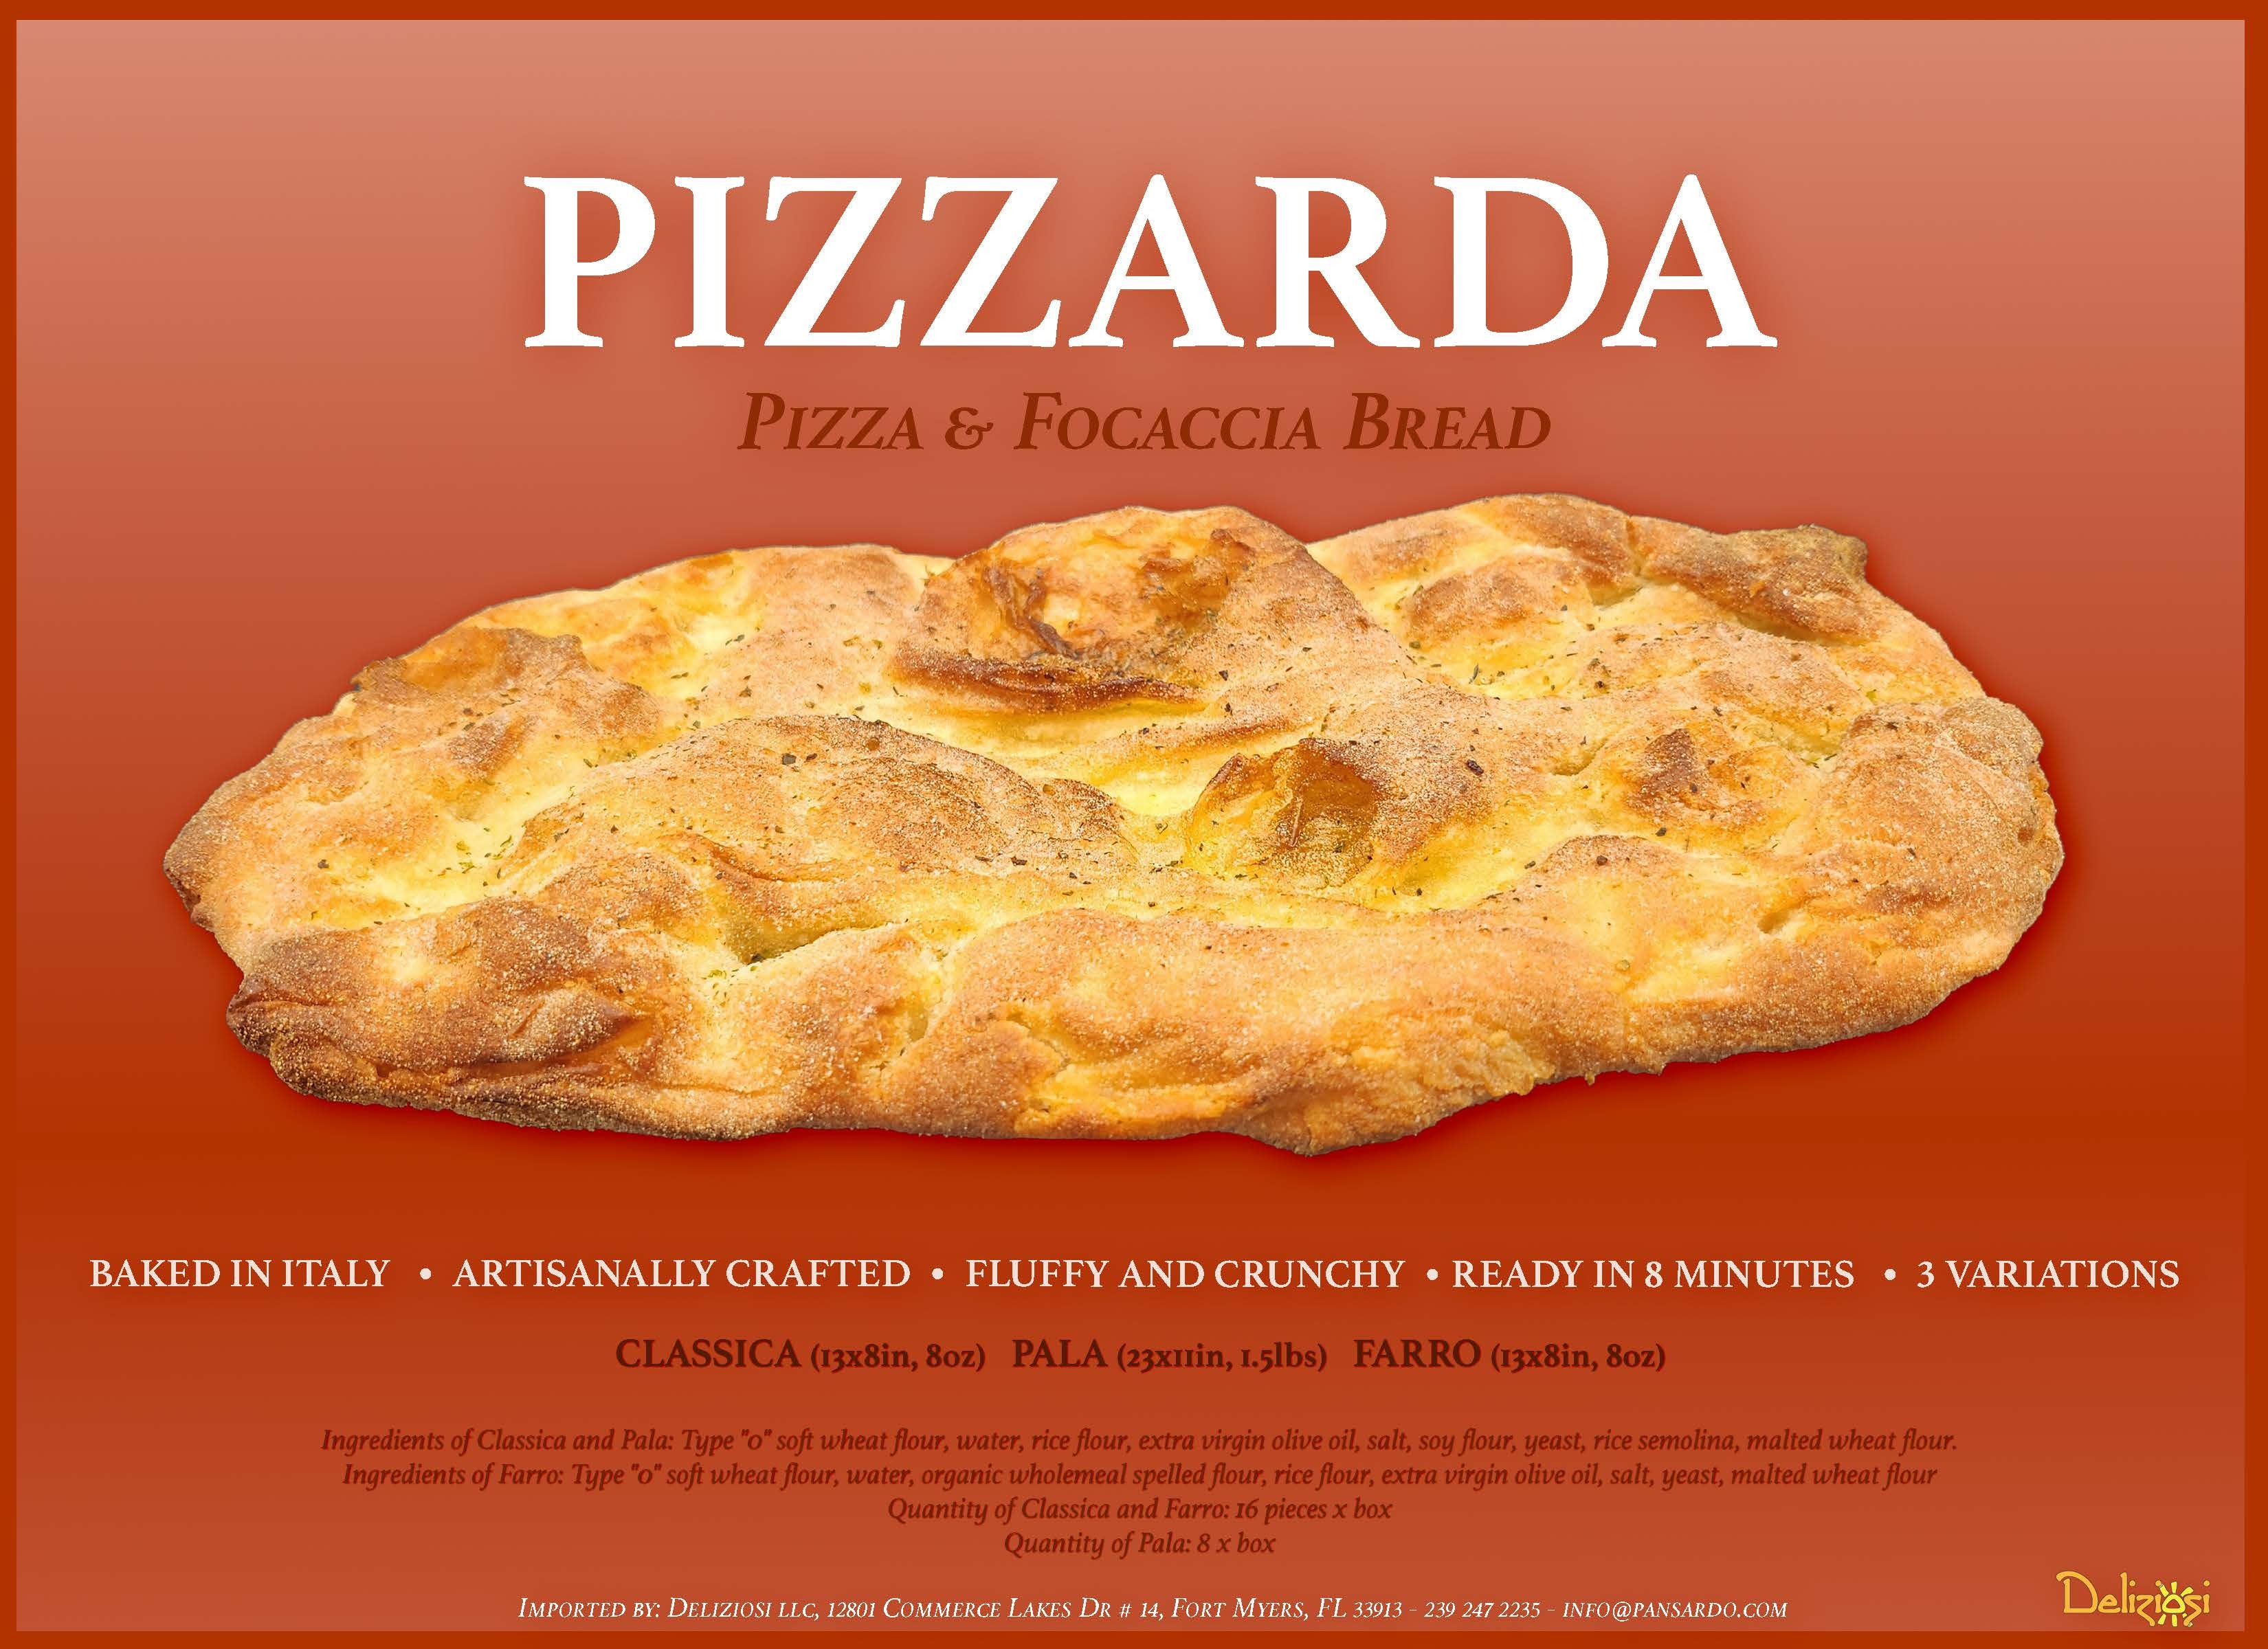 Pizzarda Pizza and Focaccia Bread 93